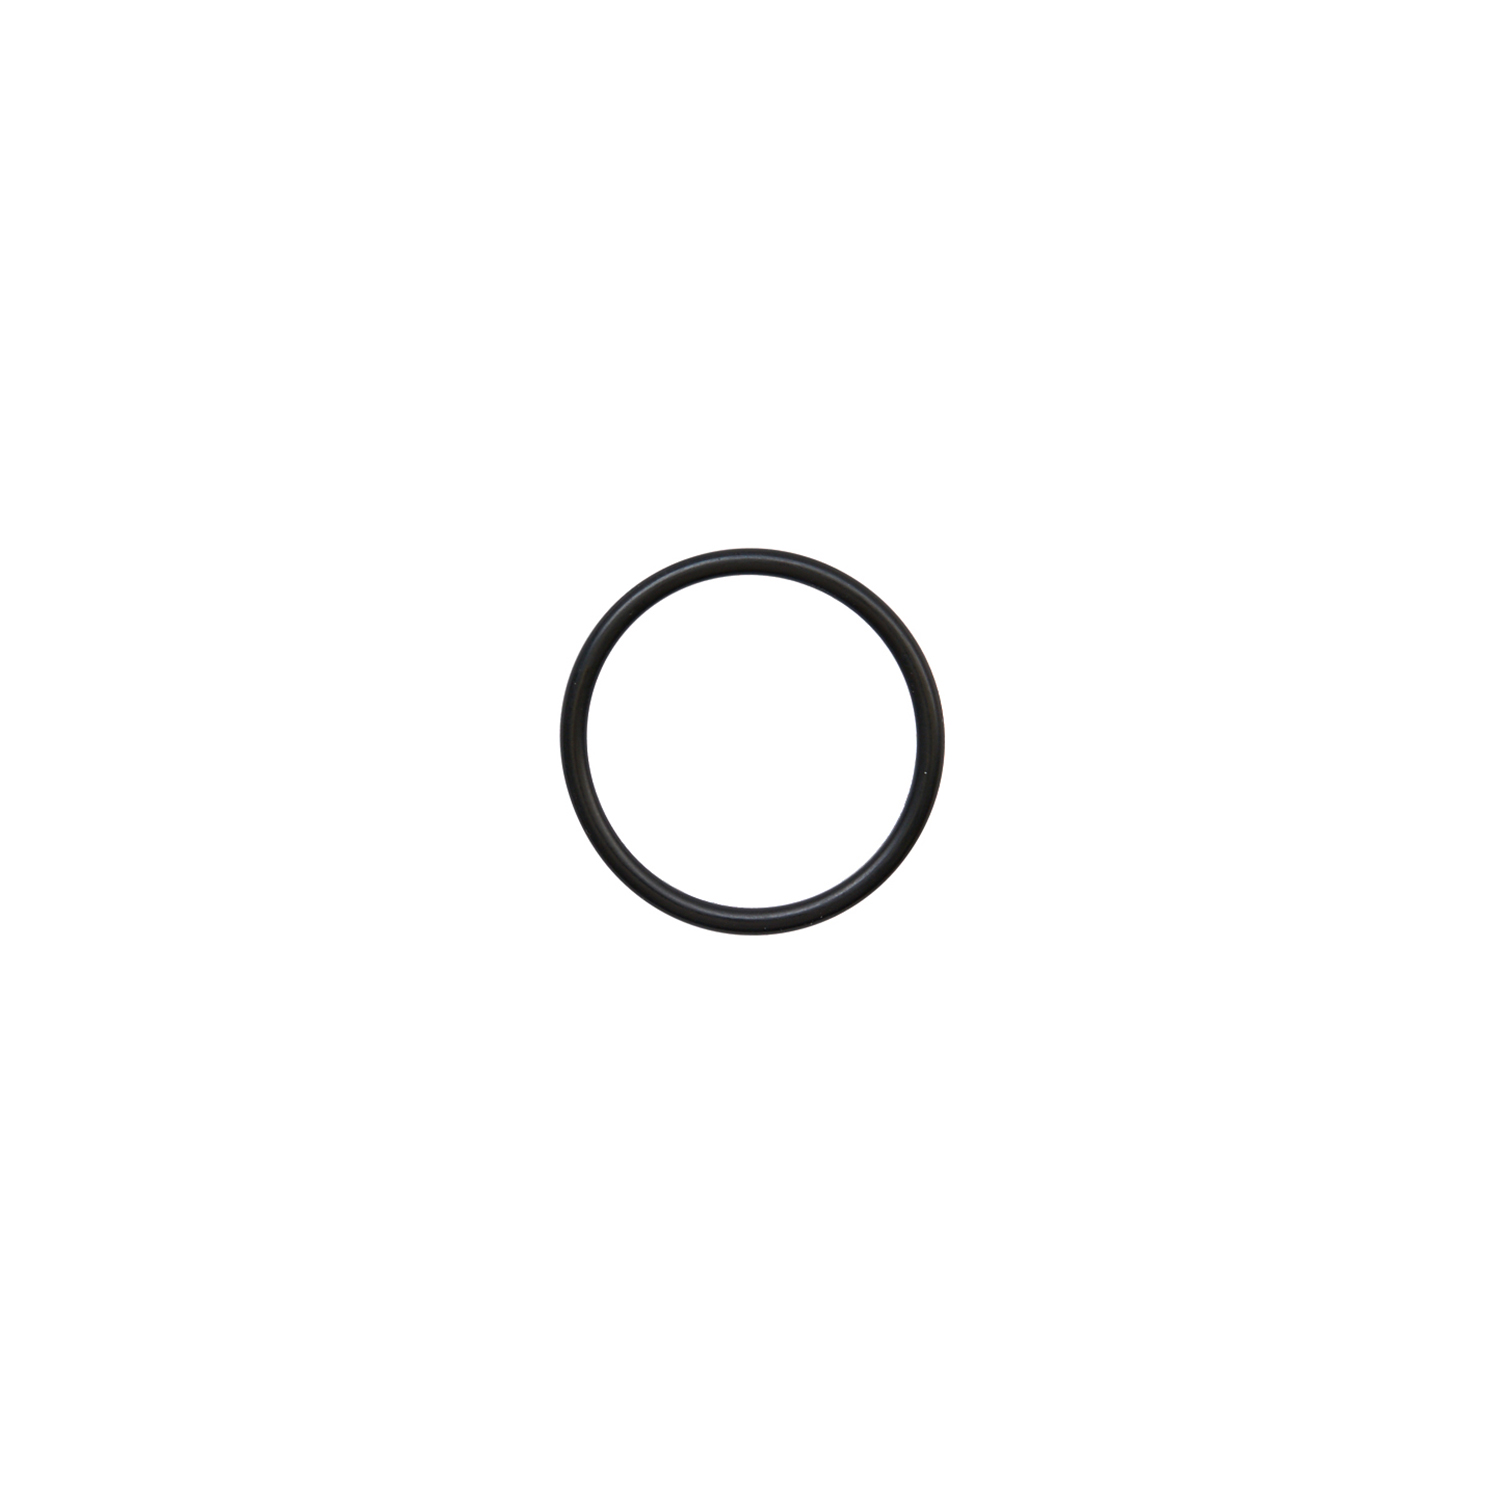 Кольцо уплотнительное 27*2.4 ( O-ring 27*2.4 ) RT-5565 поз.28